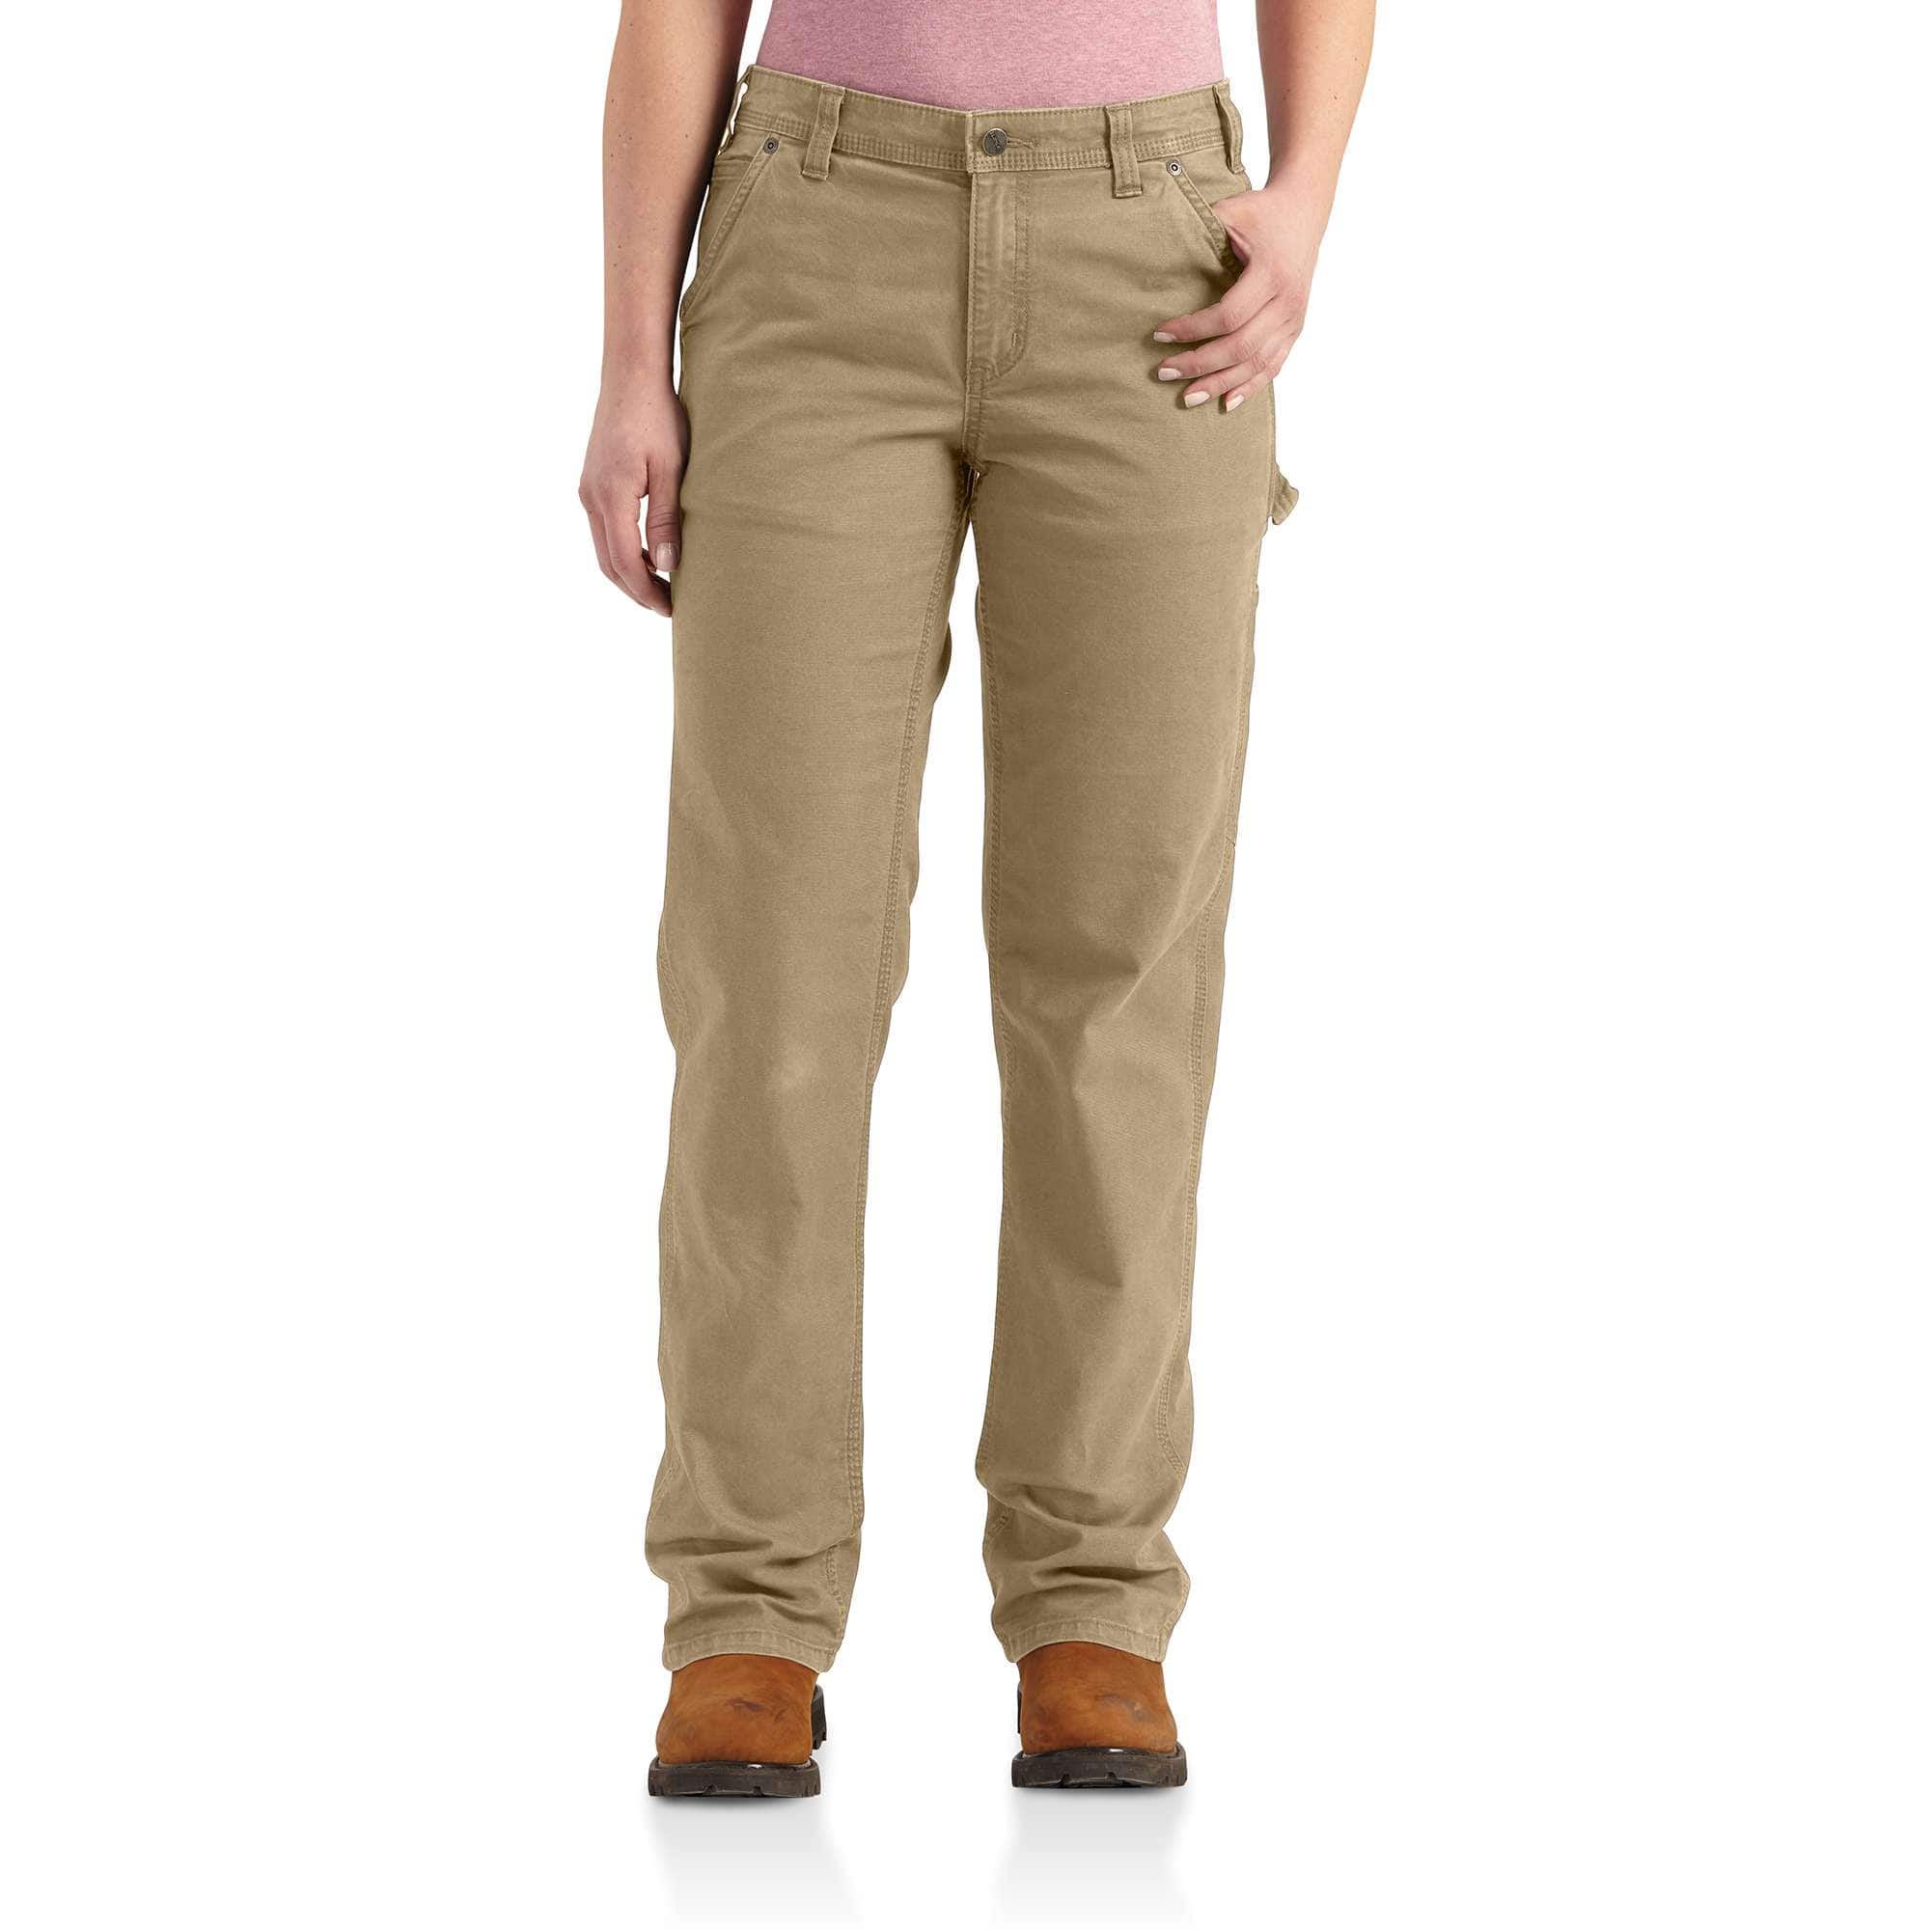 Inspectie Dwars zitten Actief Trousers & Jeans for Women | Carhartt® | Free shipping